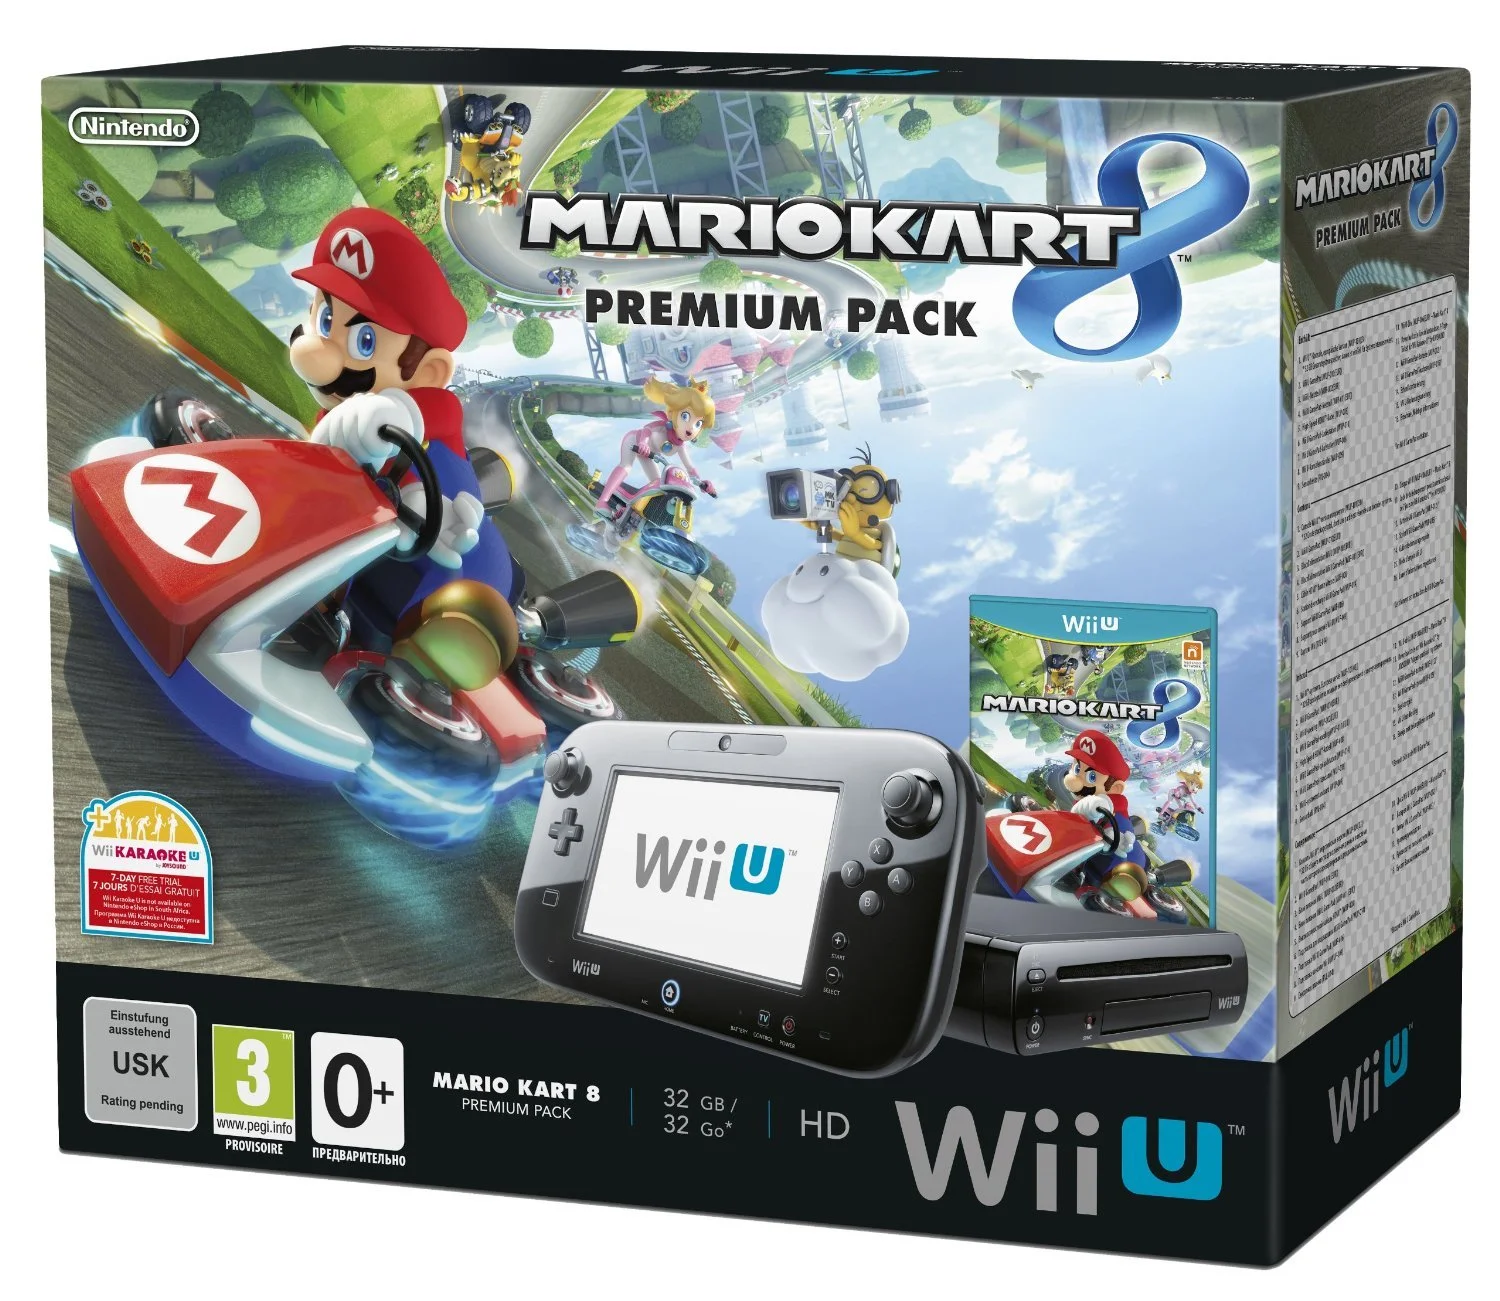 Mario Kart 8 войдет в новый бандл Wii U